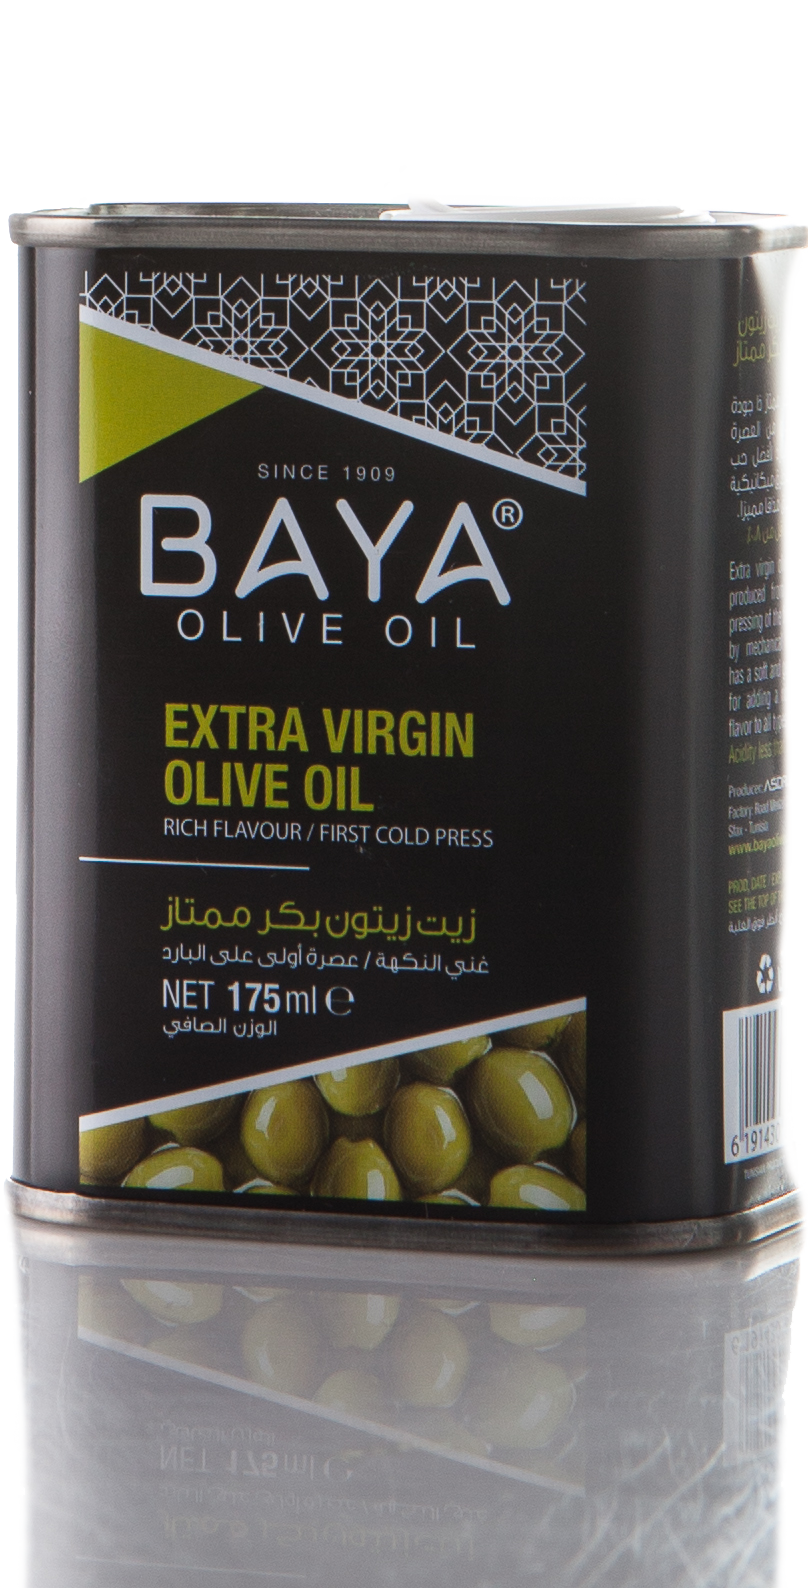 Baya Экстра Вирджин оливковое масло. Baya Olive Oil. Baya масло. Масло оливковое Bay. Оливковое масло baya